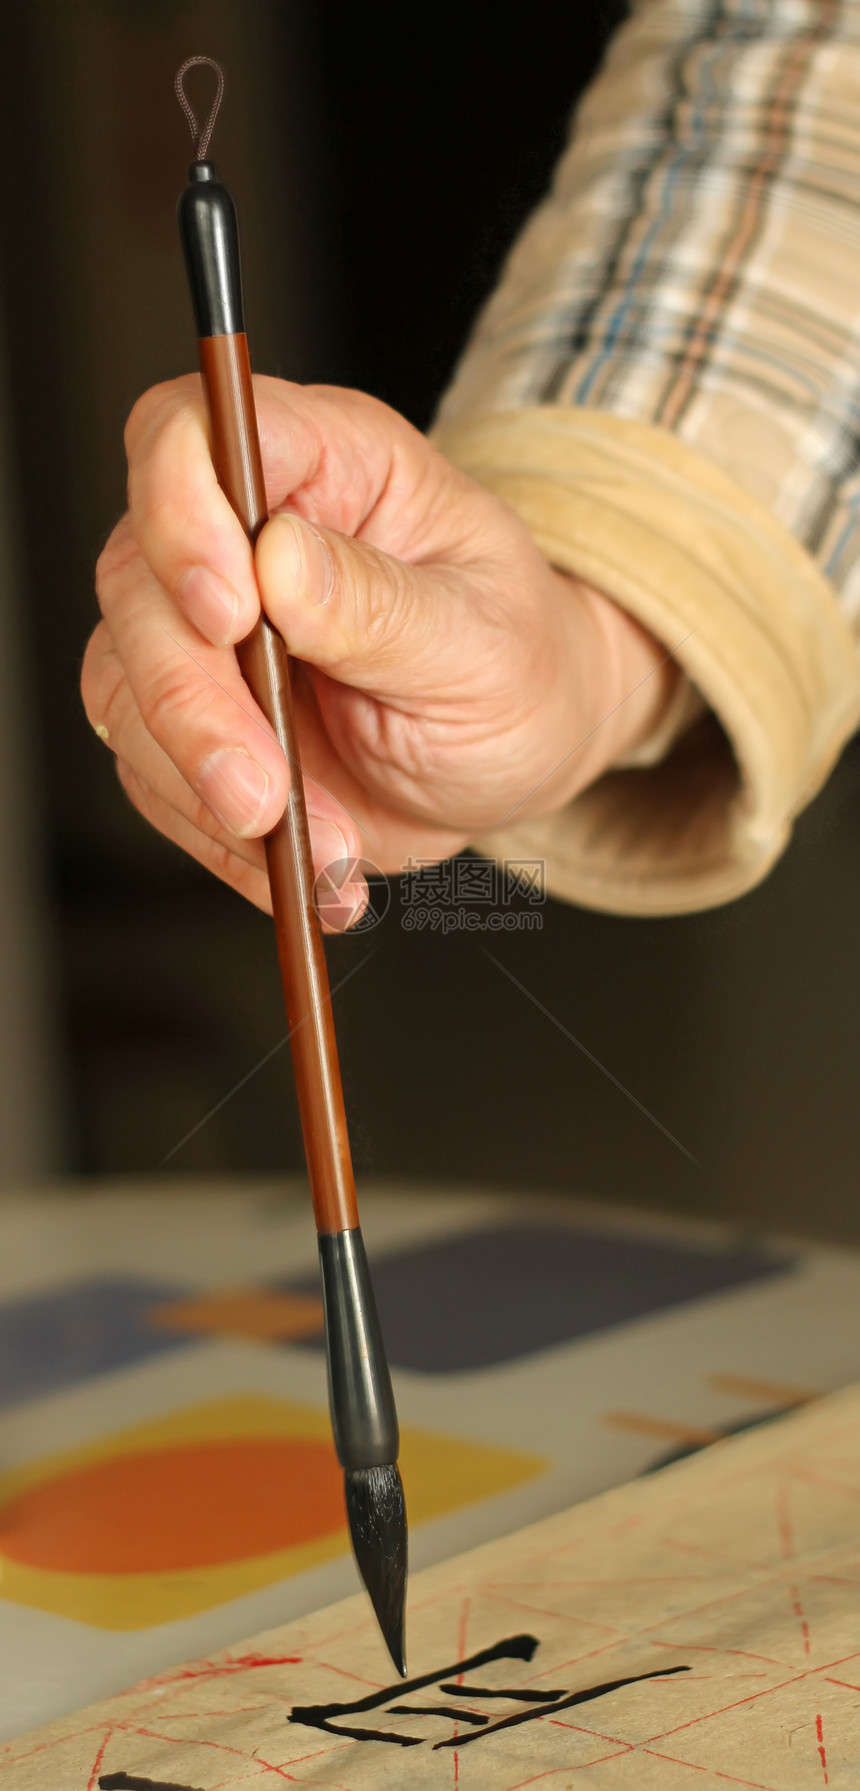 一个老人用笔笔做书法的老男人黑色手指刷子文字脚本墨水画笔文化绘画钢笔图片